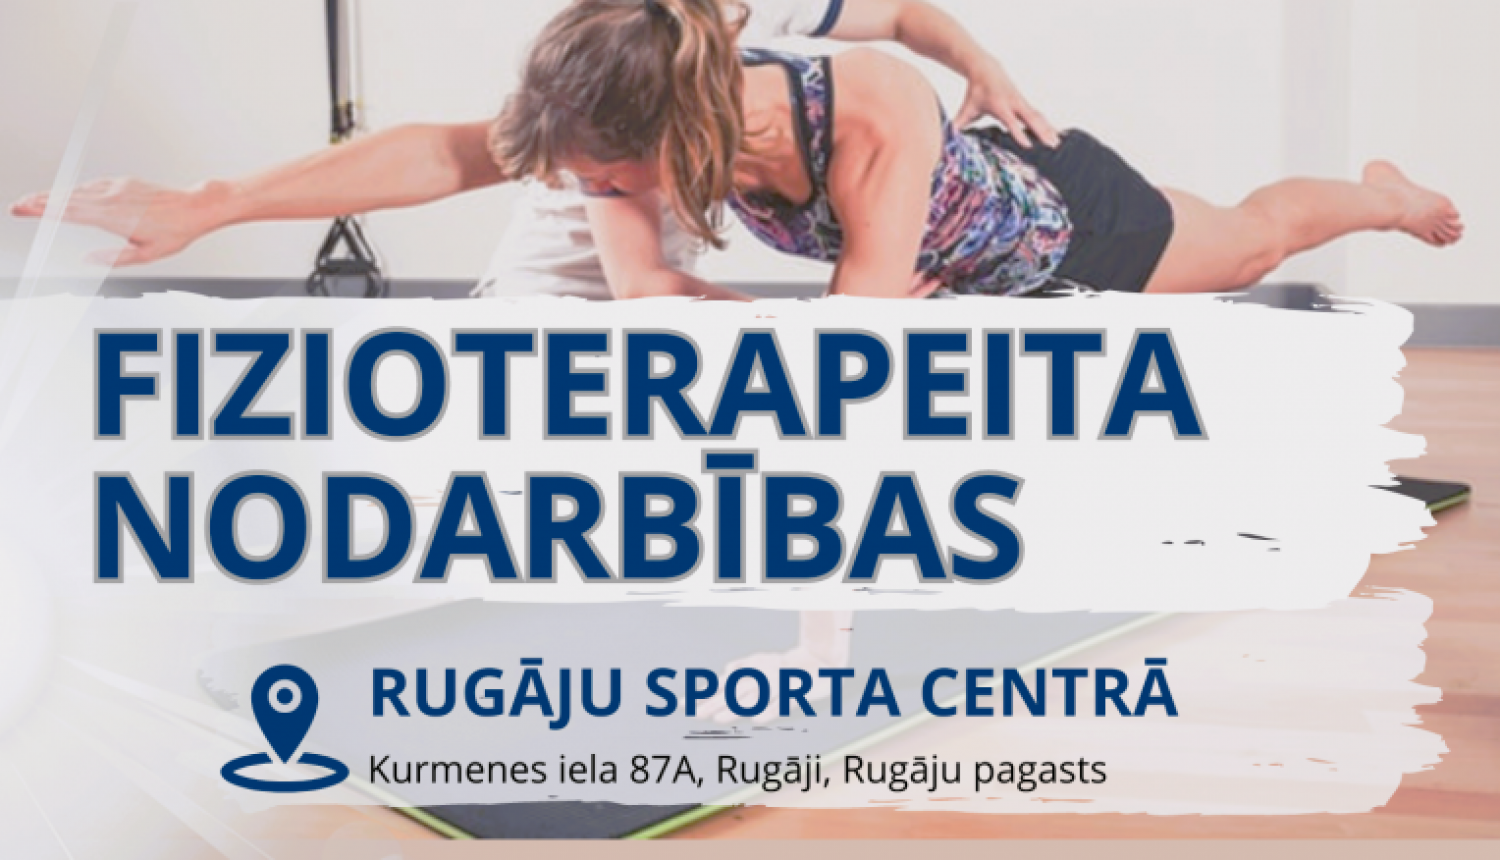 Fizioterapeita nodarbības Rugāju Sporta centrā